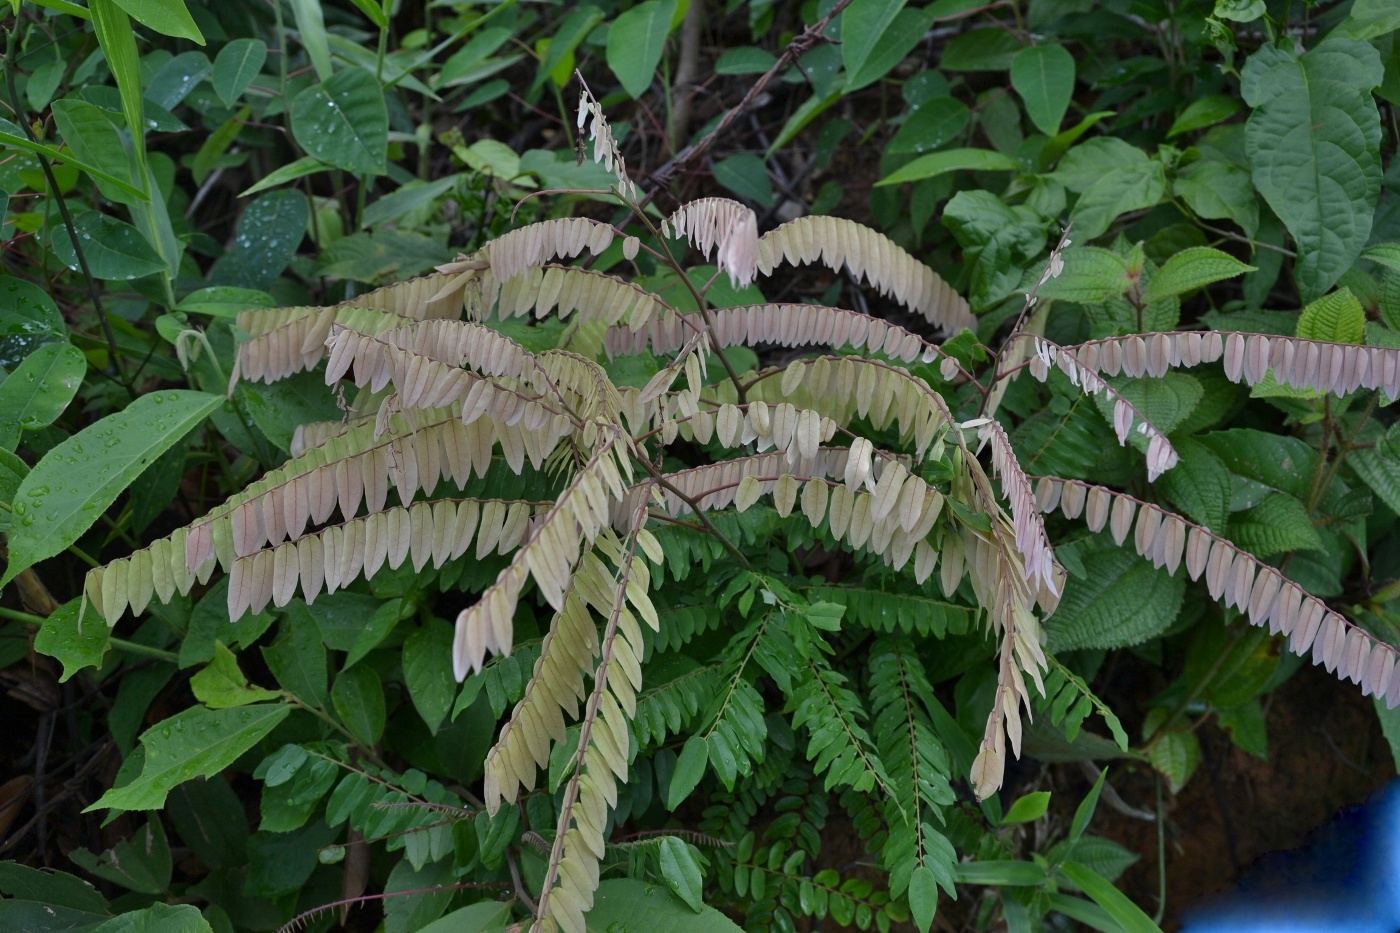 Image of genus Phyllanthus specimen.